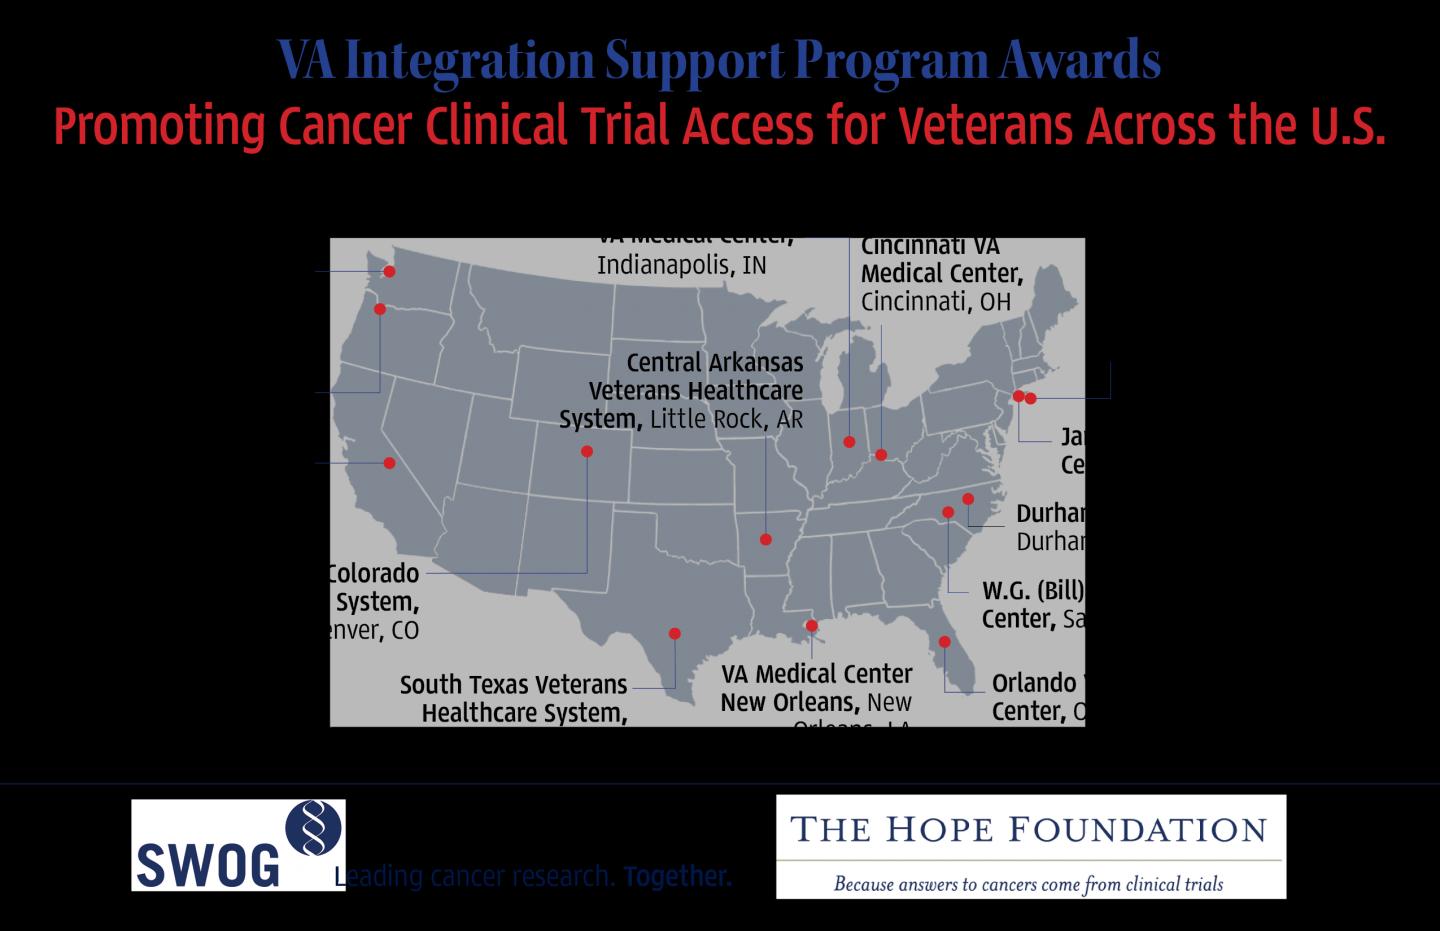 VA Integration Support Program Award Winners